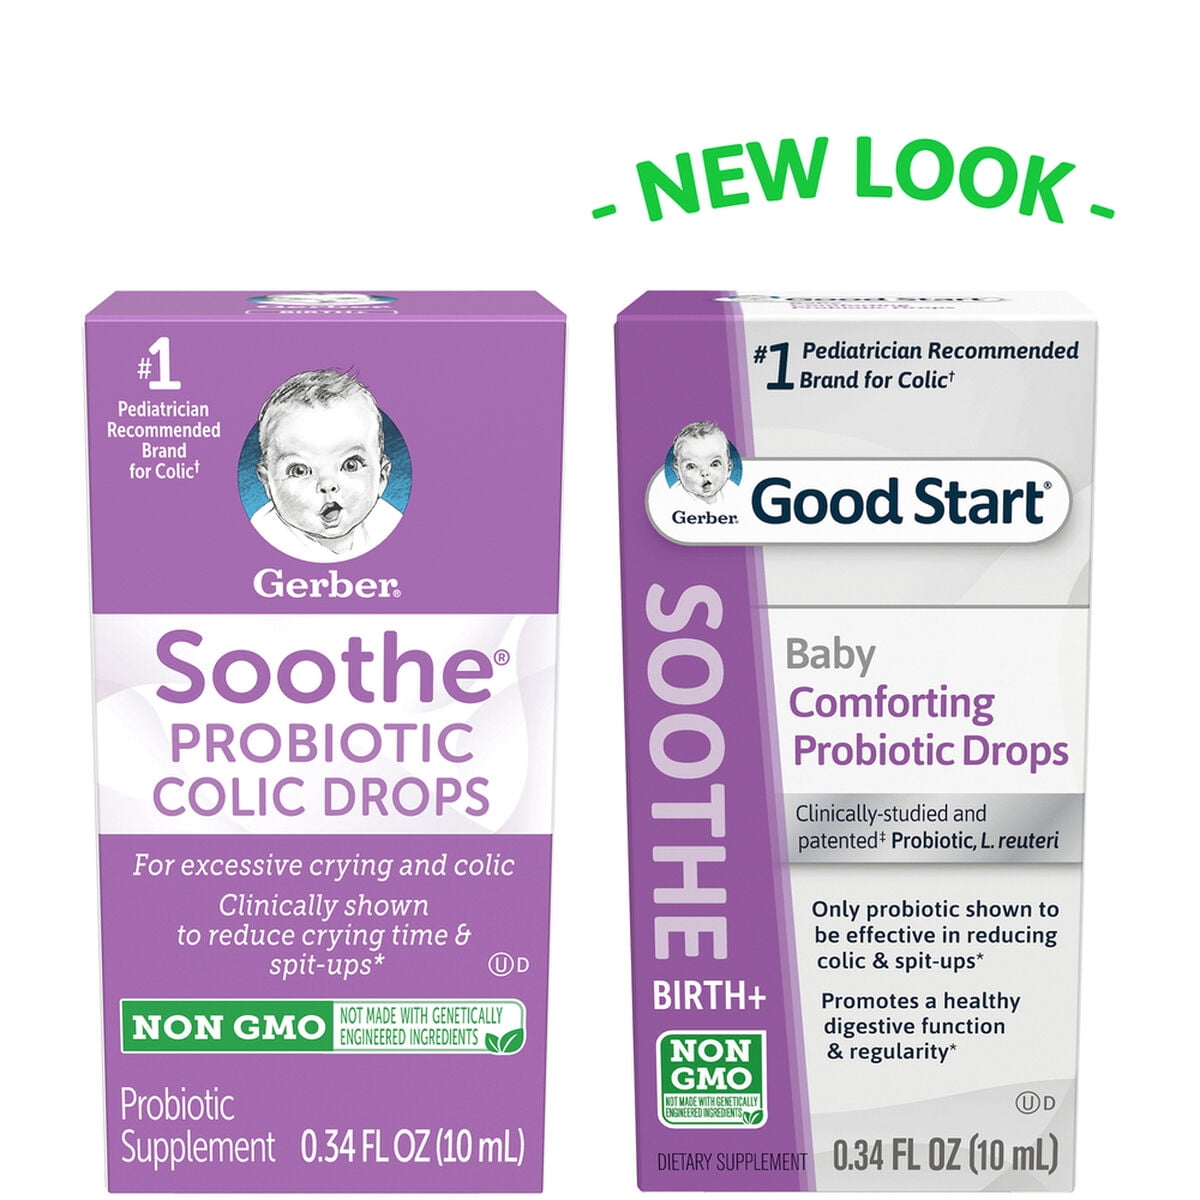 gerber soothe probiotic colic drops